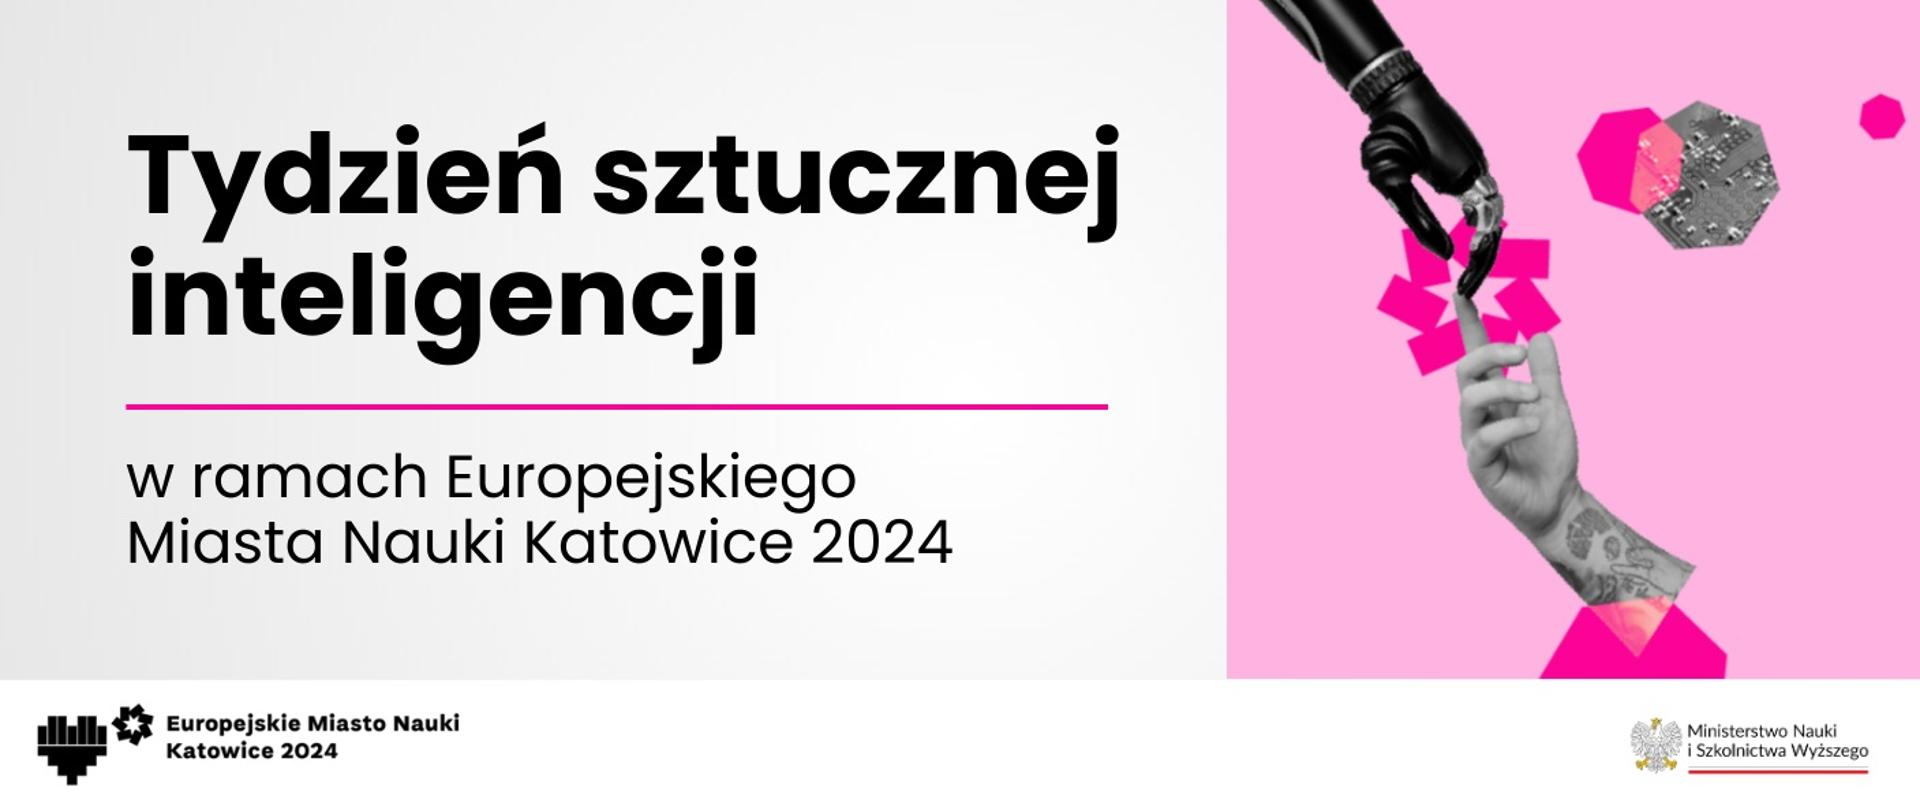 Grafika - na różowym tle ręka robota, obok napis Tydzień sztucznej inteligencji w ramach Europejskiego Miasta Nauki Katowice 2024.